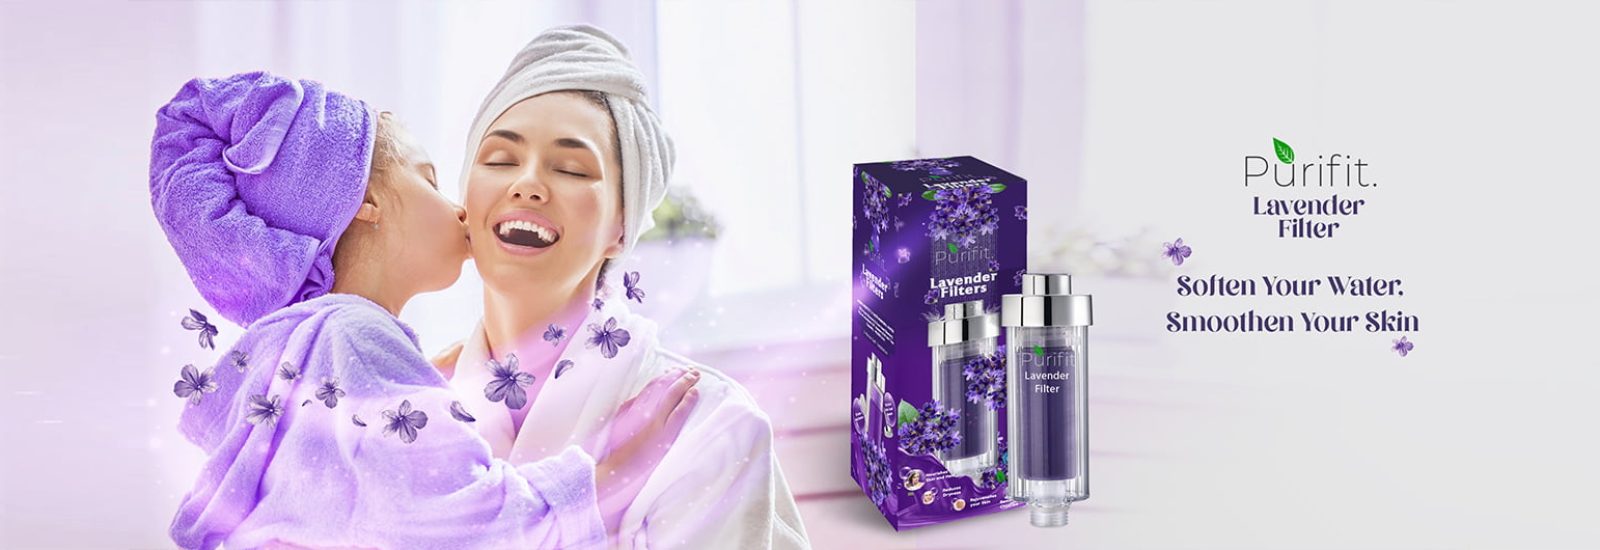 Purifit Lavender Flavoured Shower Filter